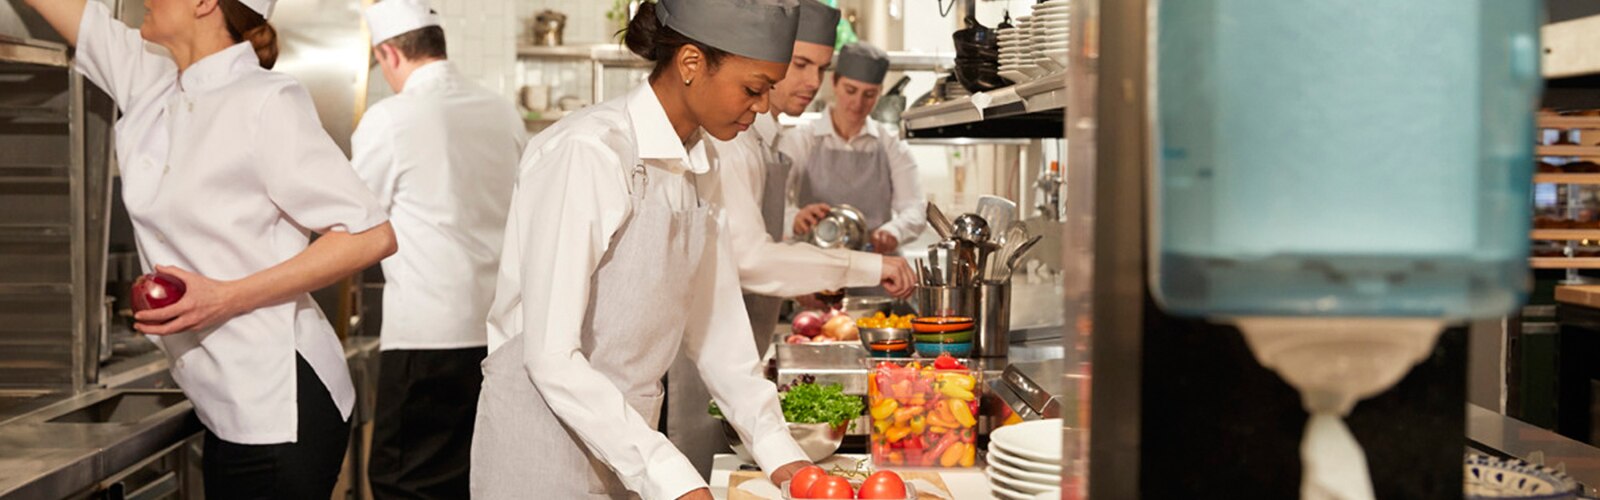 Mulheres e homens na cozinha de um restaurante a preparar refeições